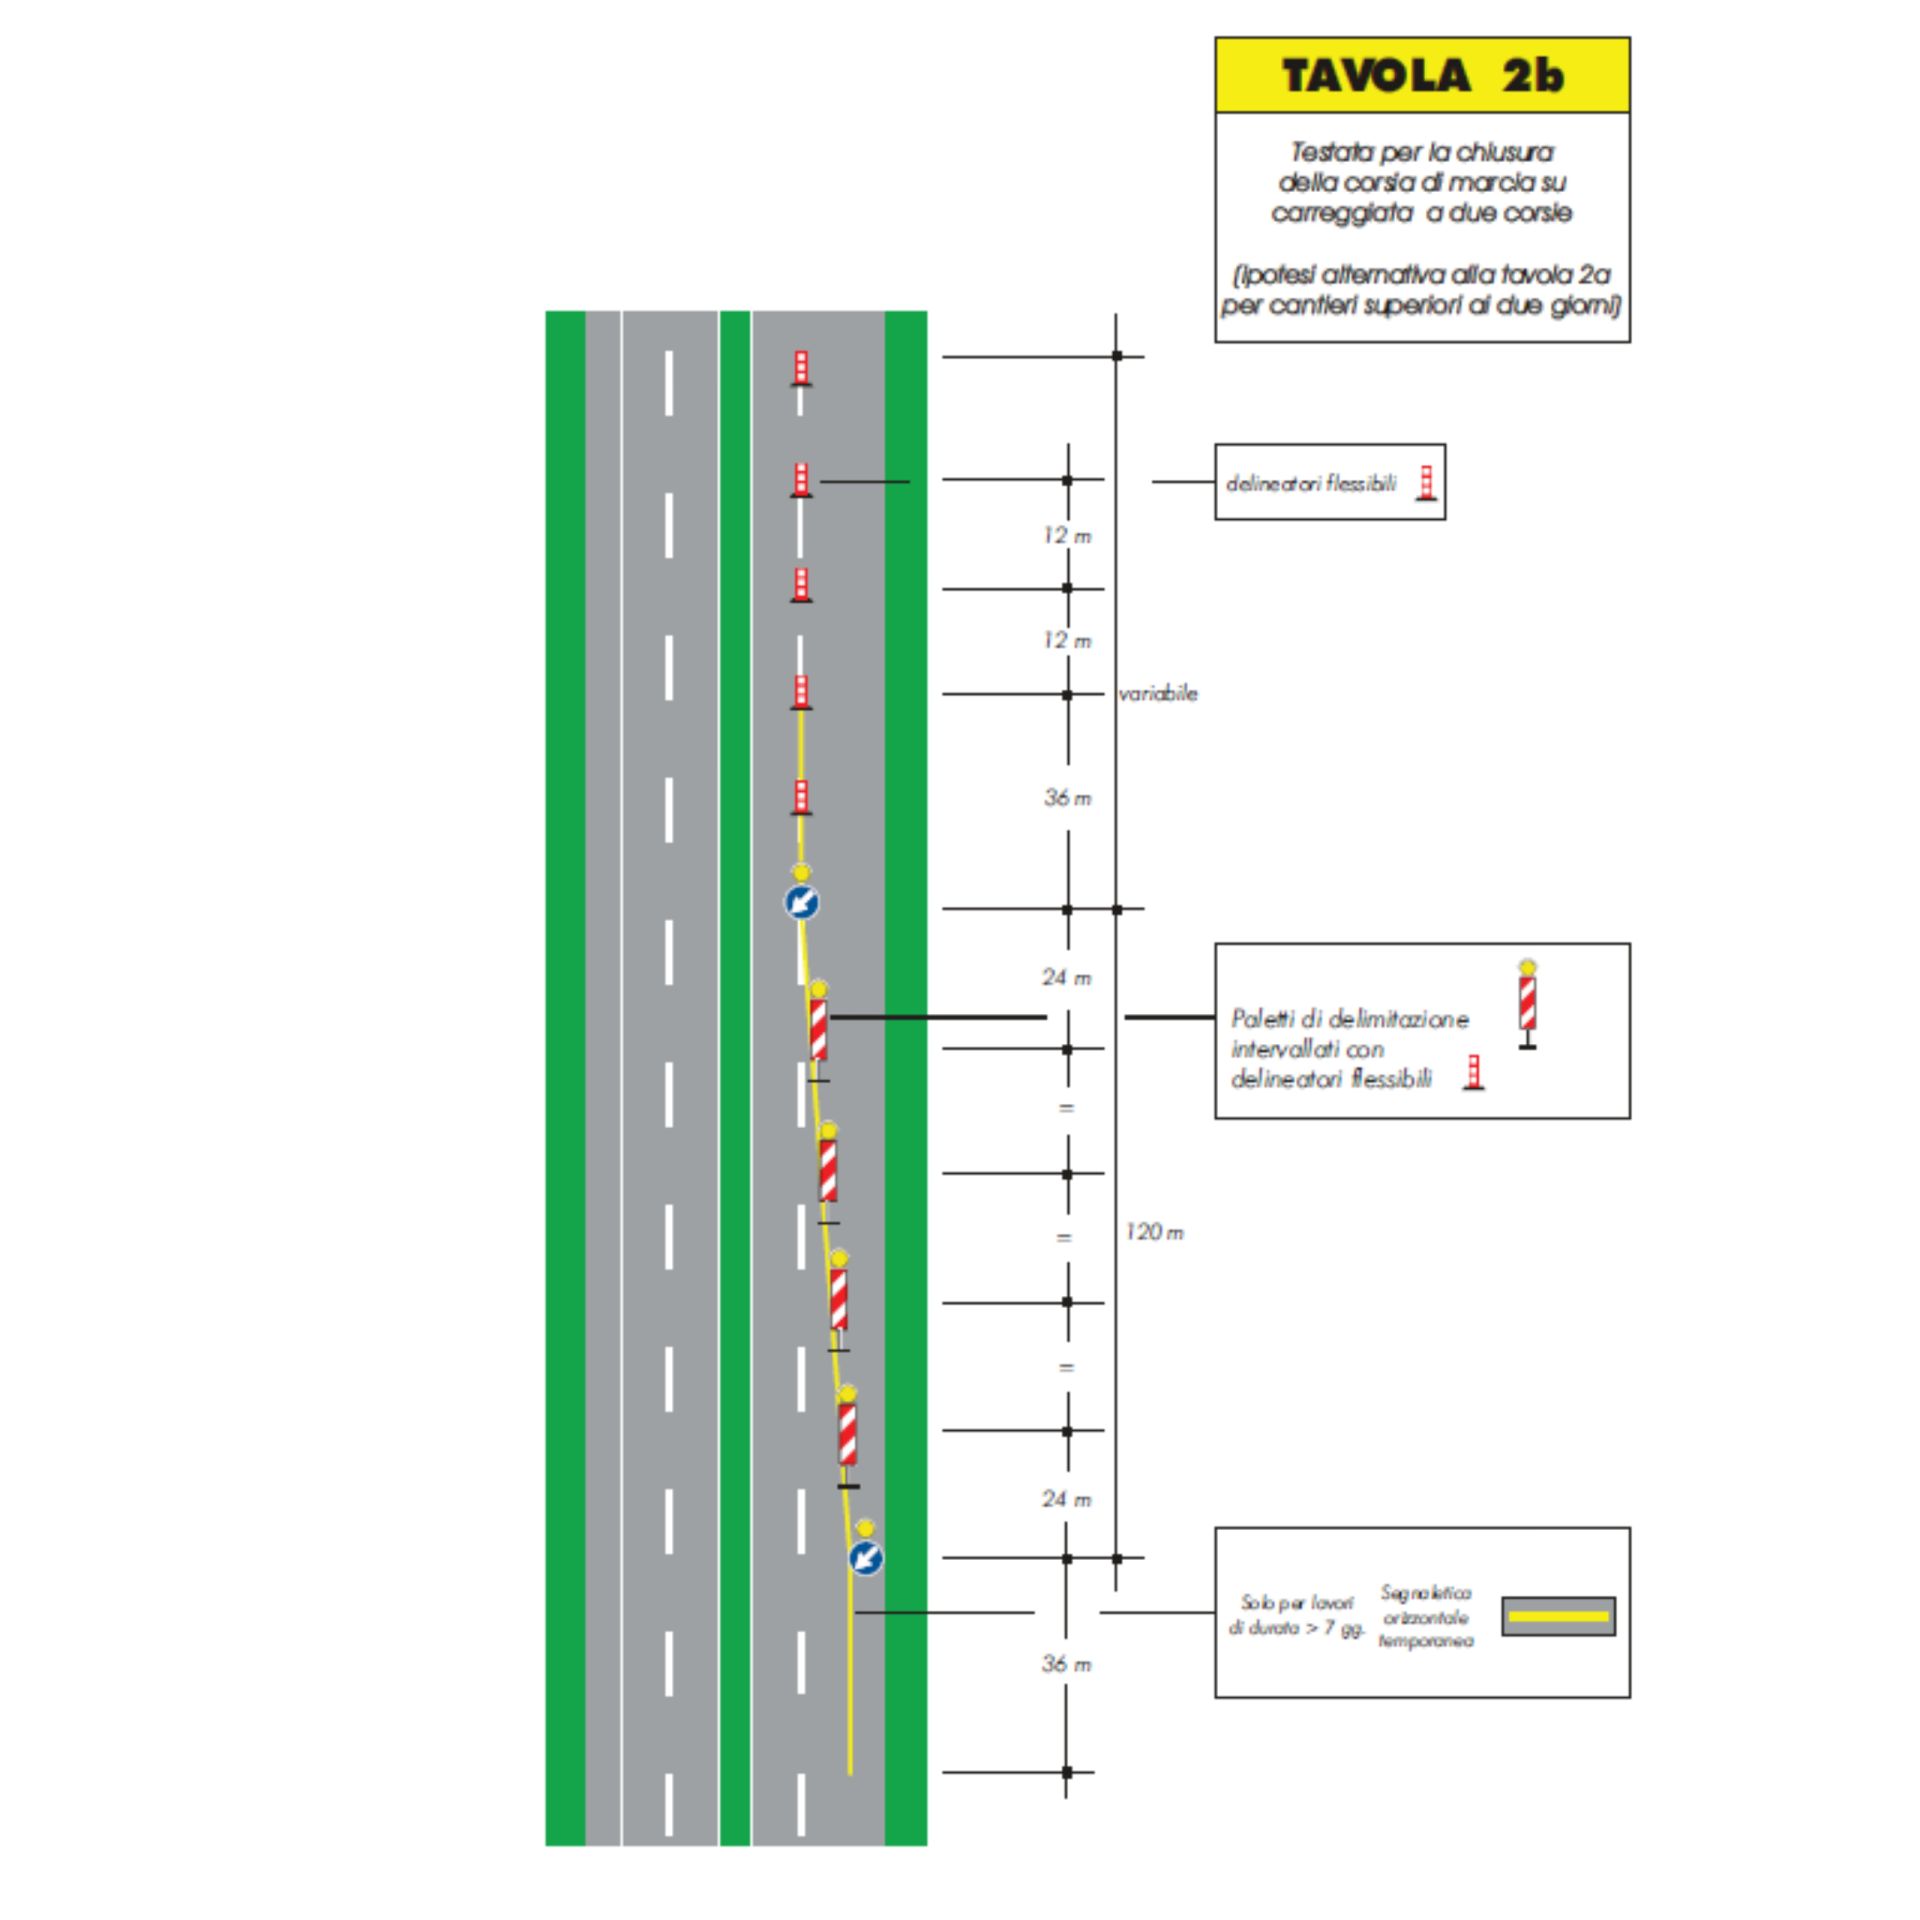 Schéma d'implantation de la signalisation temporaire de chantier Tab. 2B